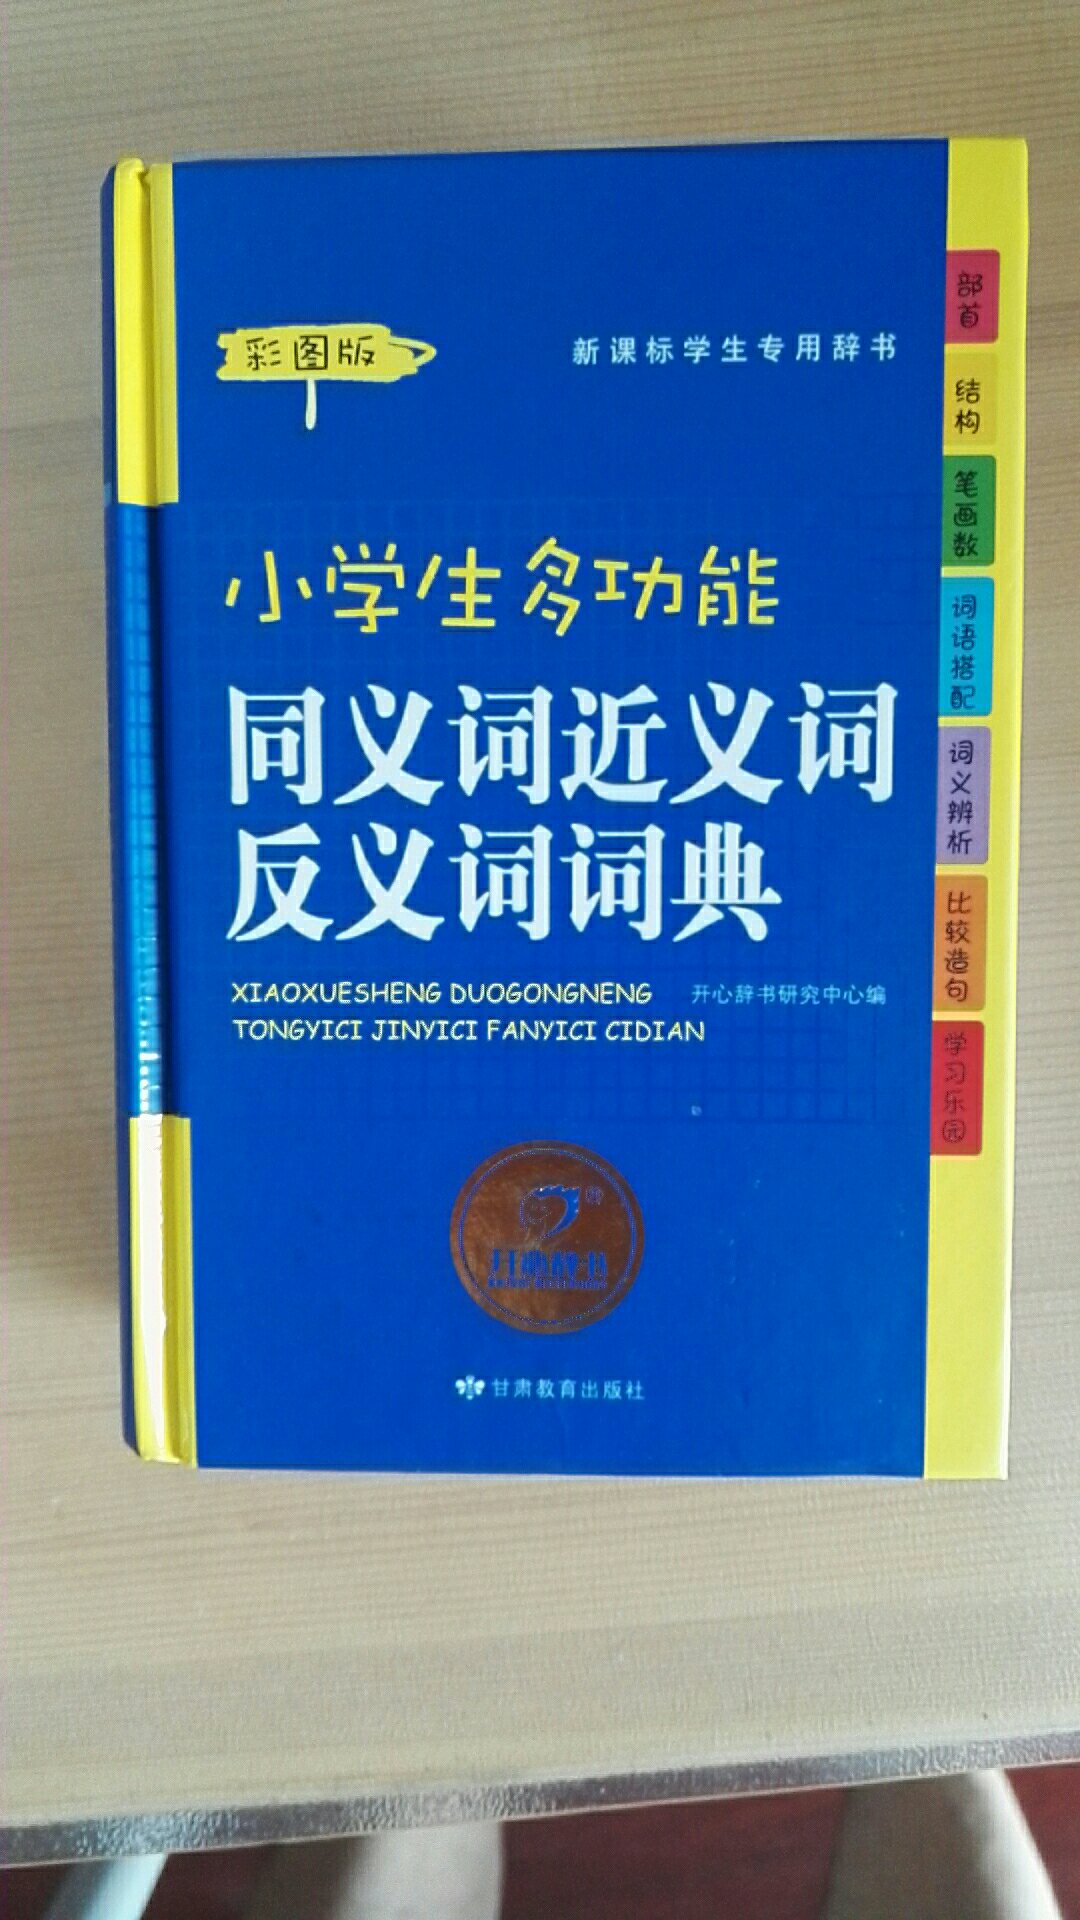 甘肃教育出版社，小学生多功能《同义词近义词反义词词典》，带彩图，黑色和彩色字体，不错。